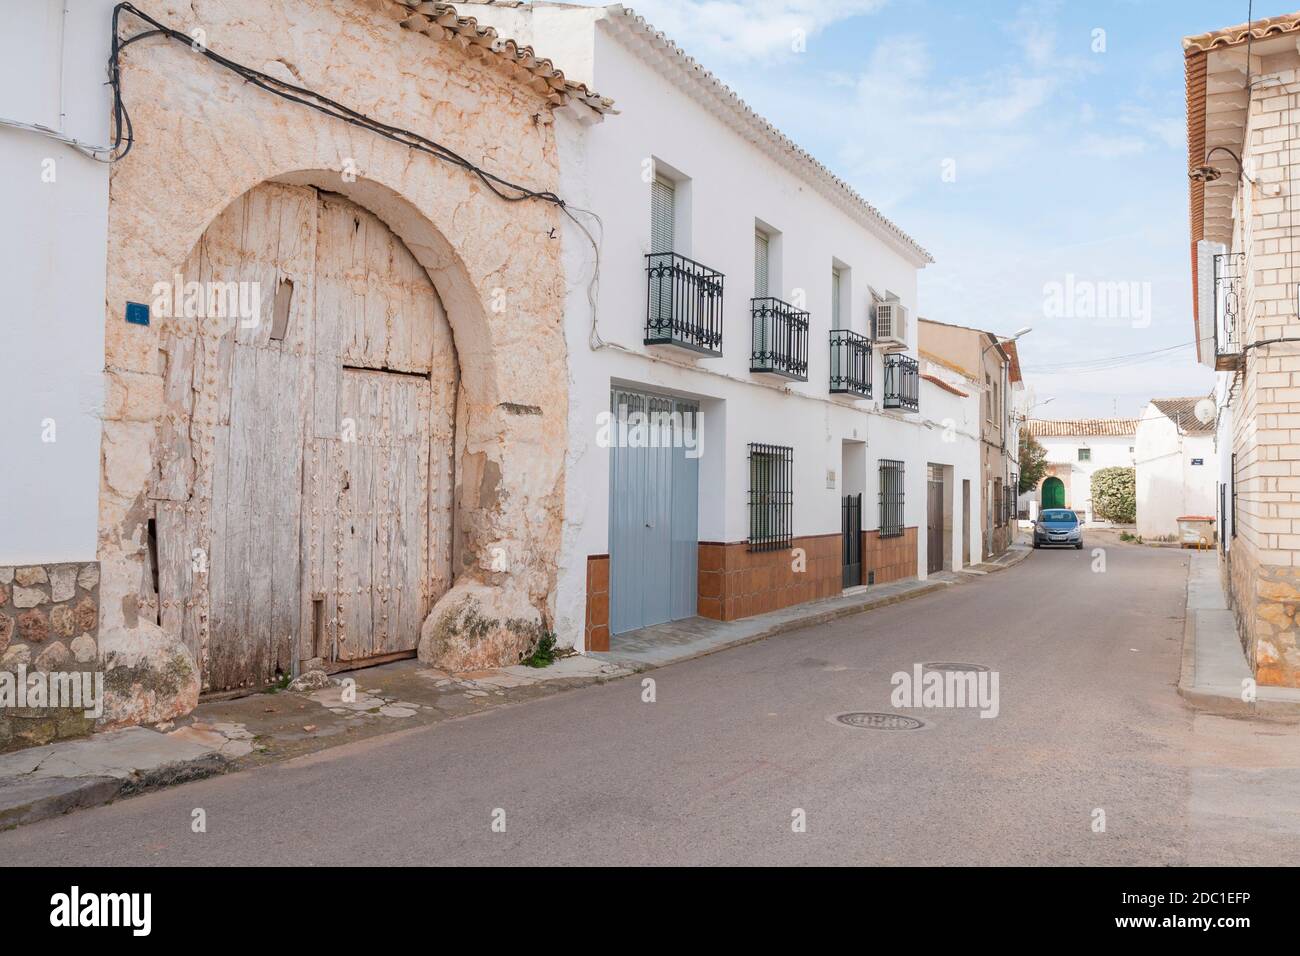 Calle típica. Los Hinojosos. Provincia de Cuenca. Castilla la Mancha. España. Stock Photo